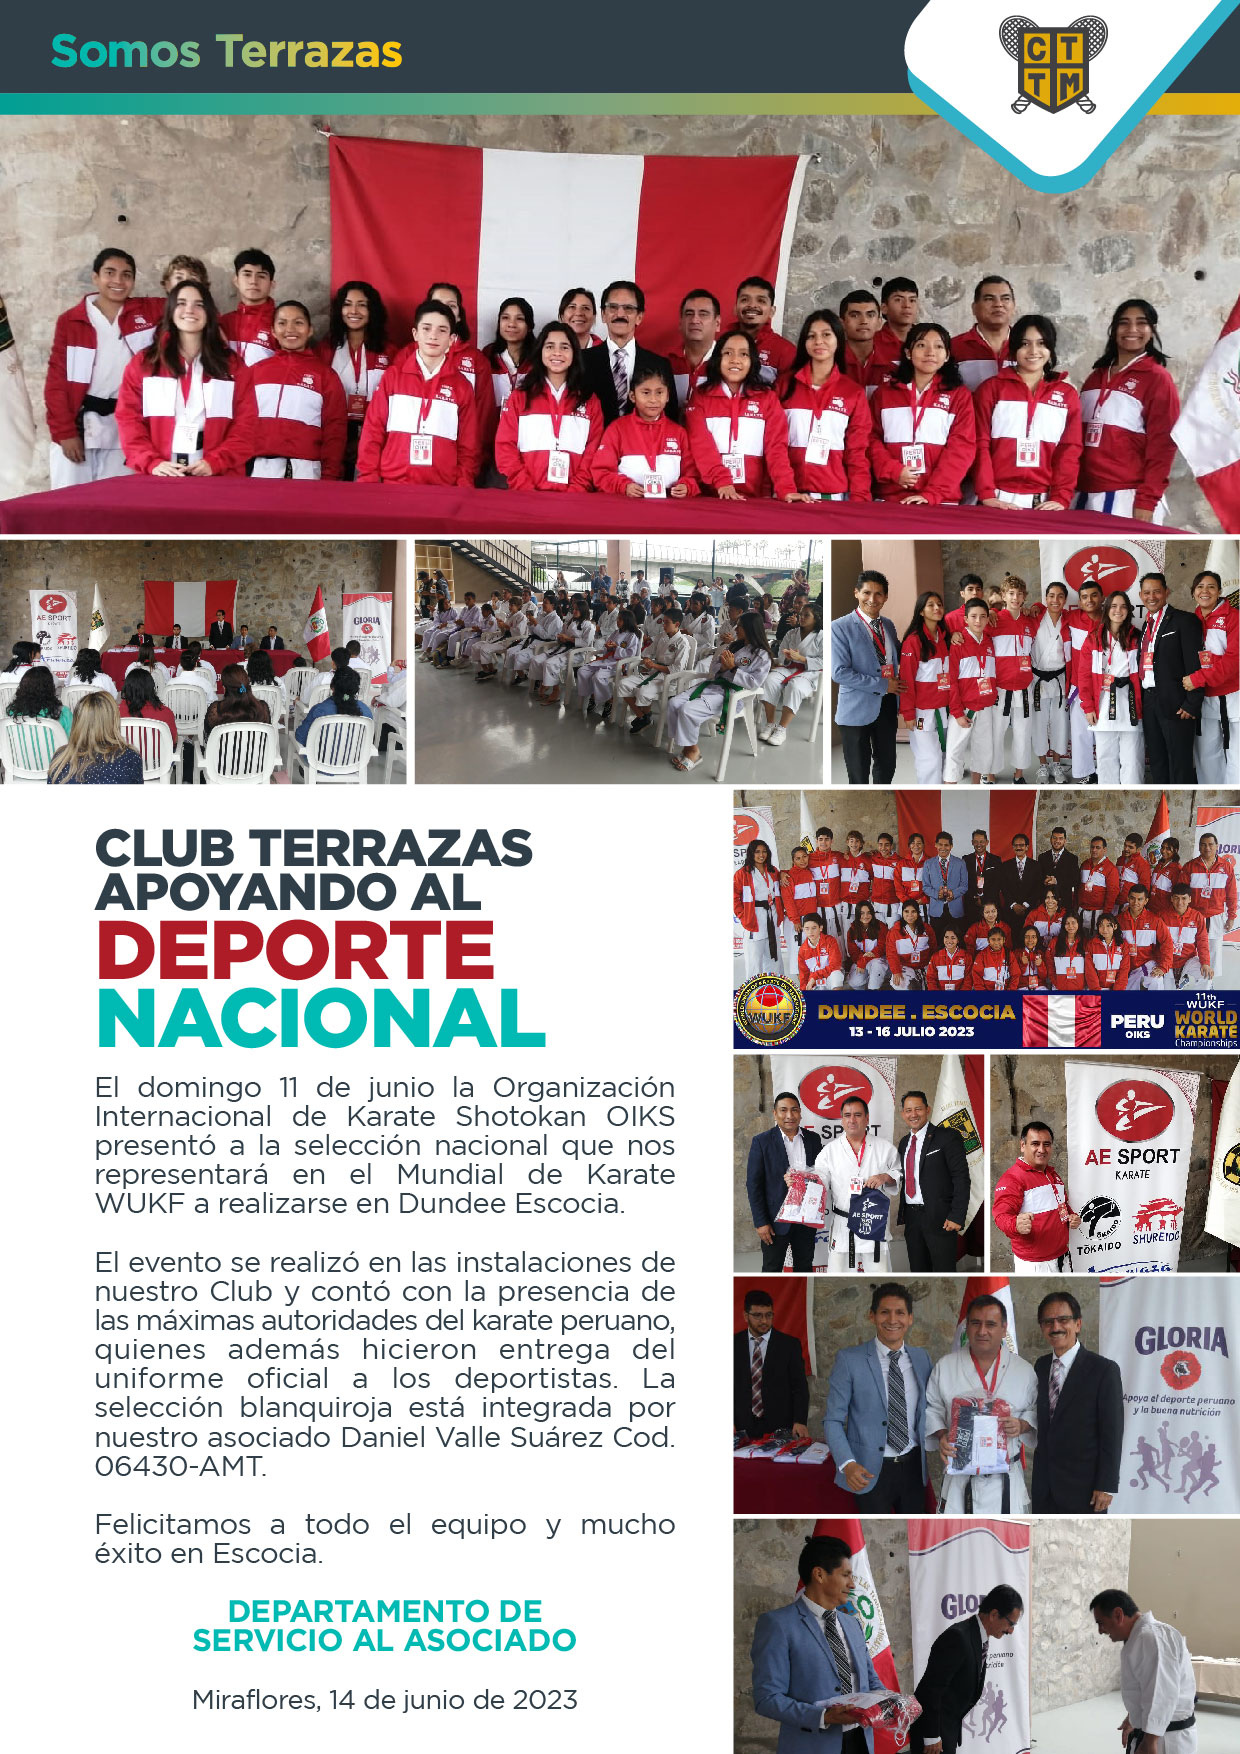 CLUB TERRAZAS APOYANDO AL DEPORTE NACIONAL